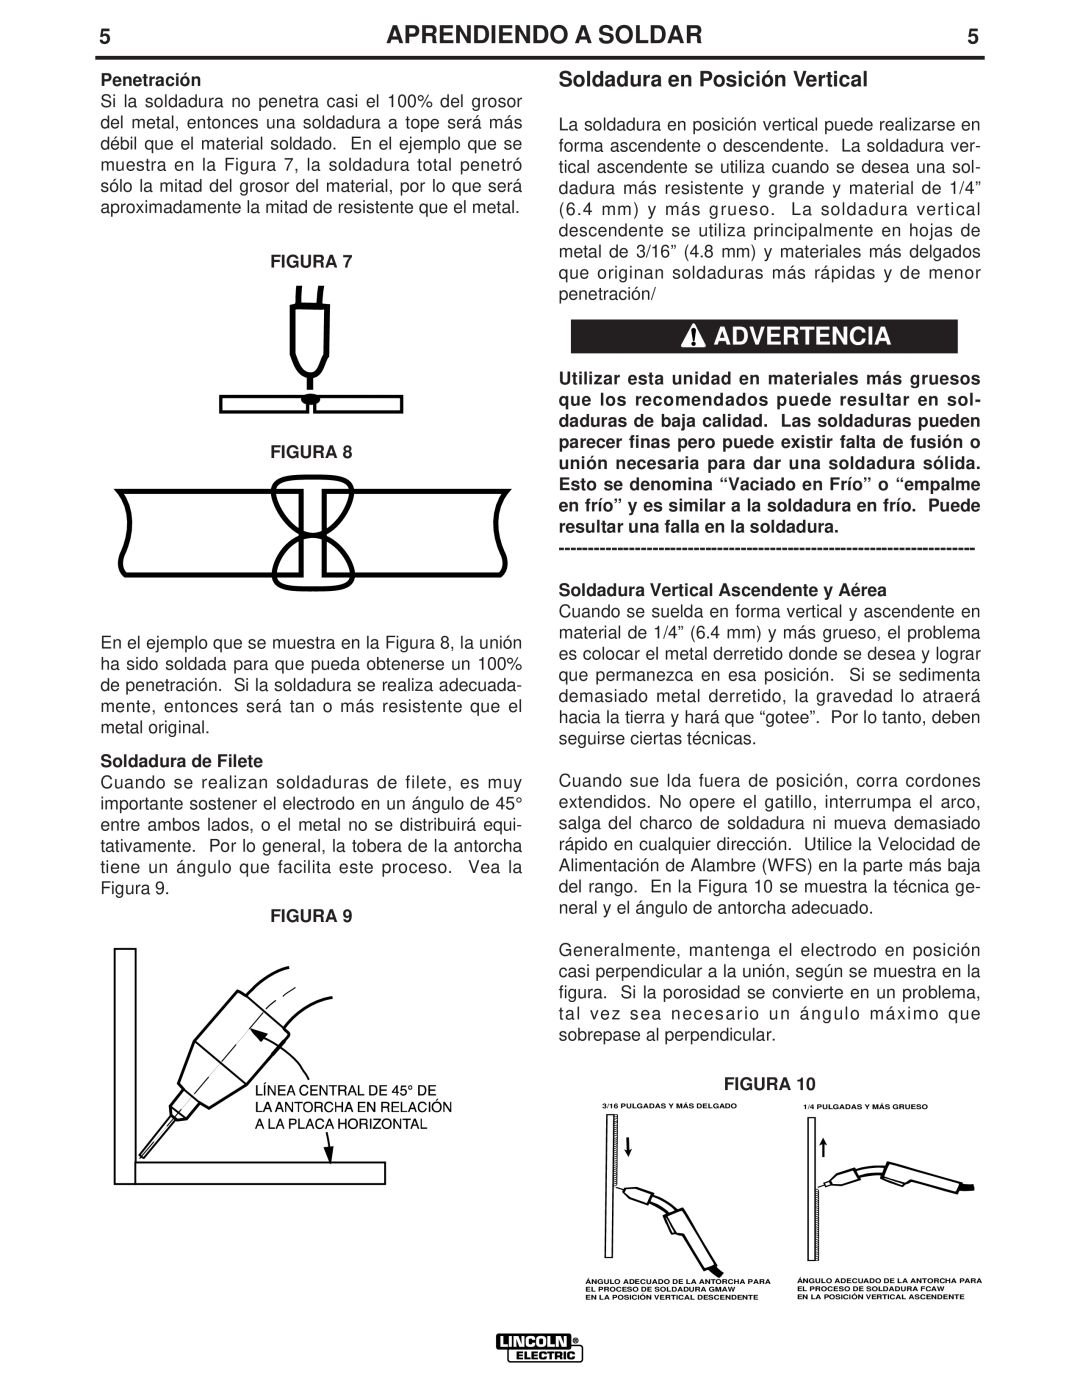 Lincoln Electric LTW1 manual Soldadura en Posición Vertical, Penetración, Figura Figura, Soldadura de Filete, Advertencia 